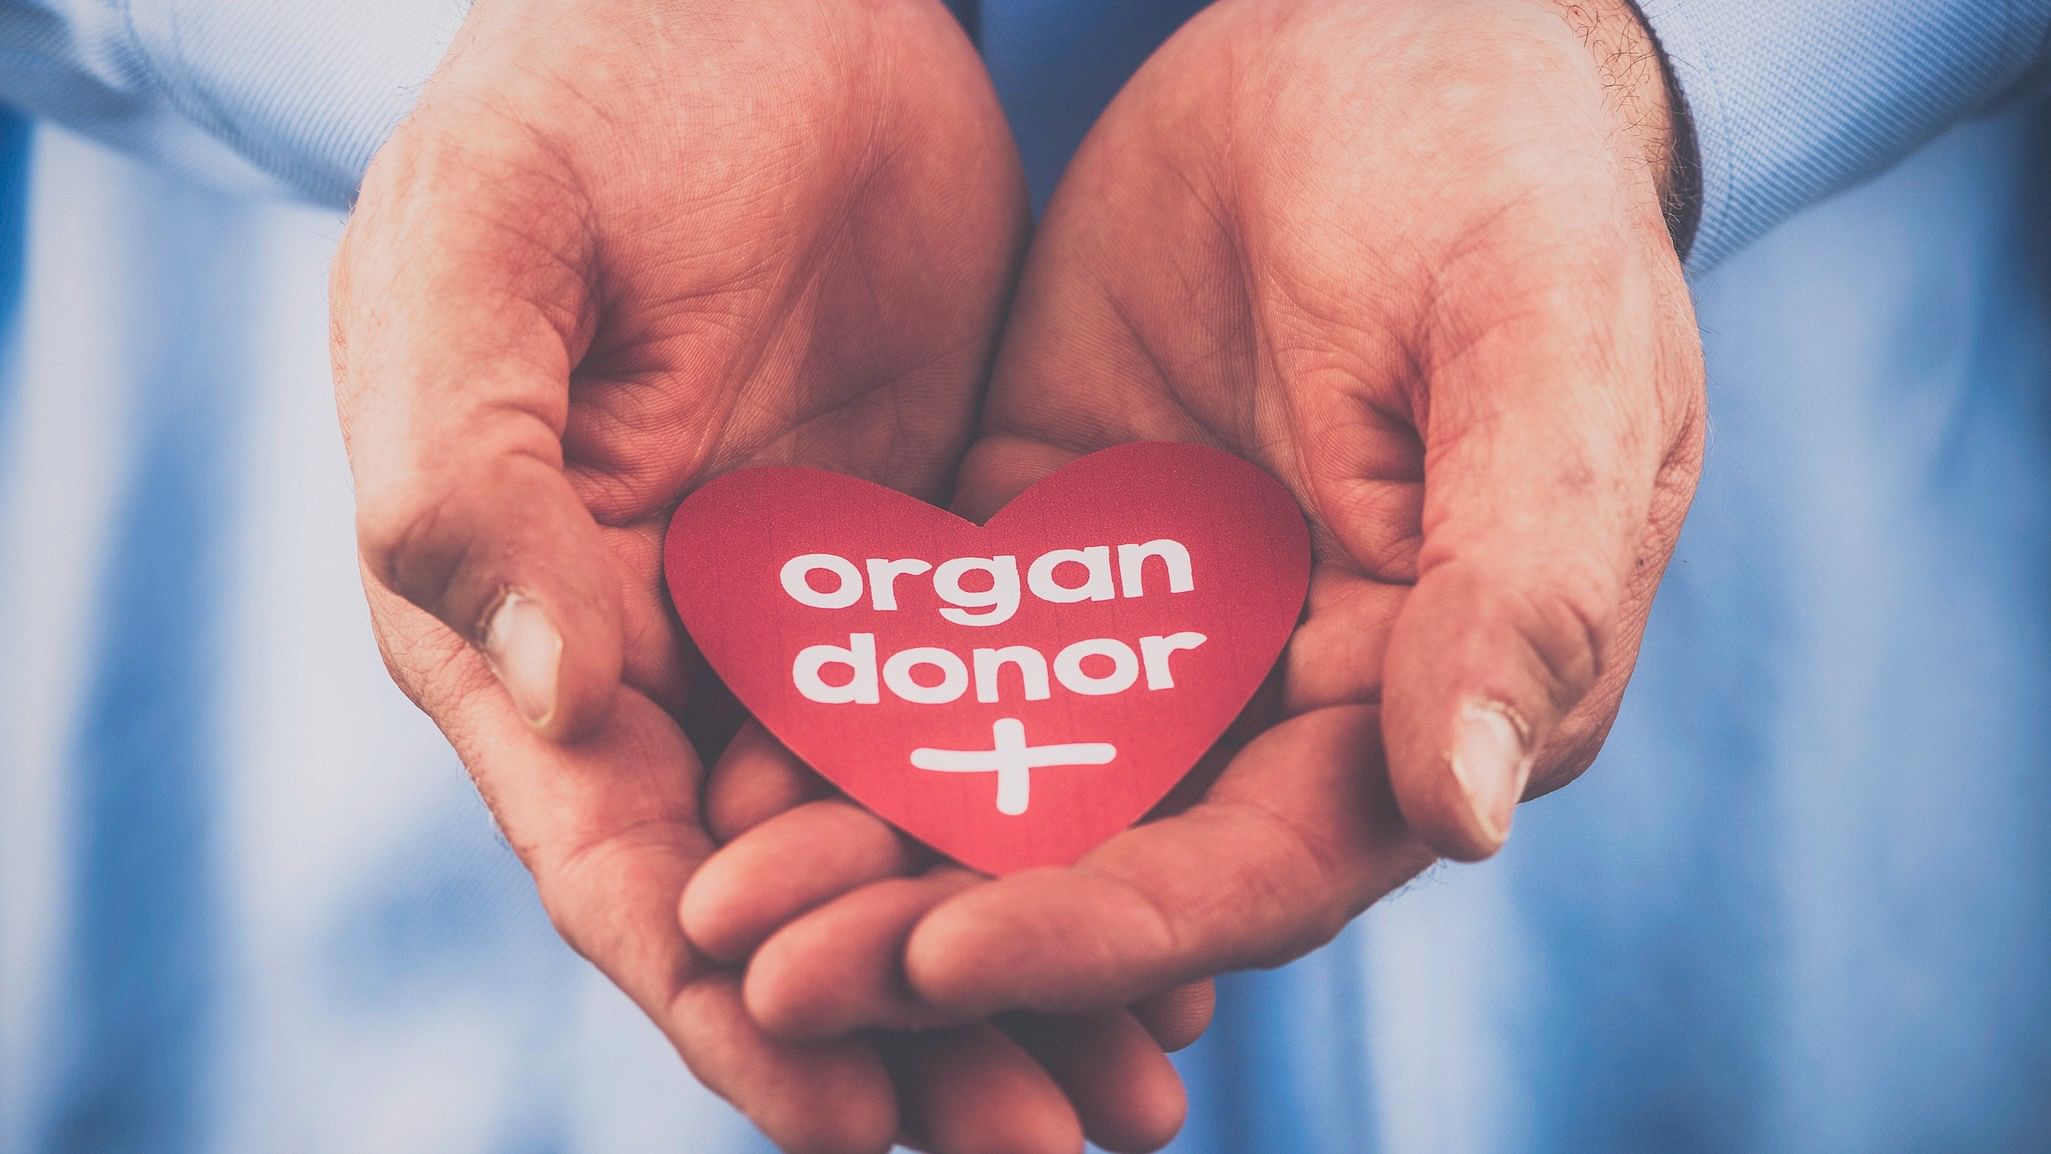 <div class="paragraphs"><p>Representative image of organ donation.&nbsp;</p></div>